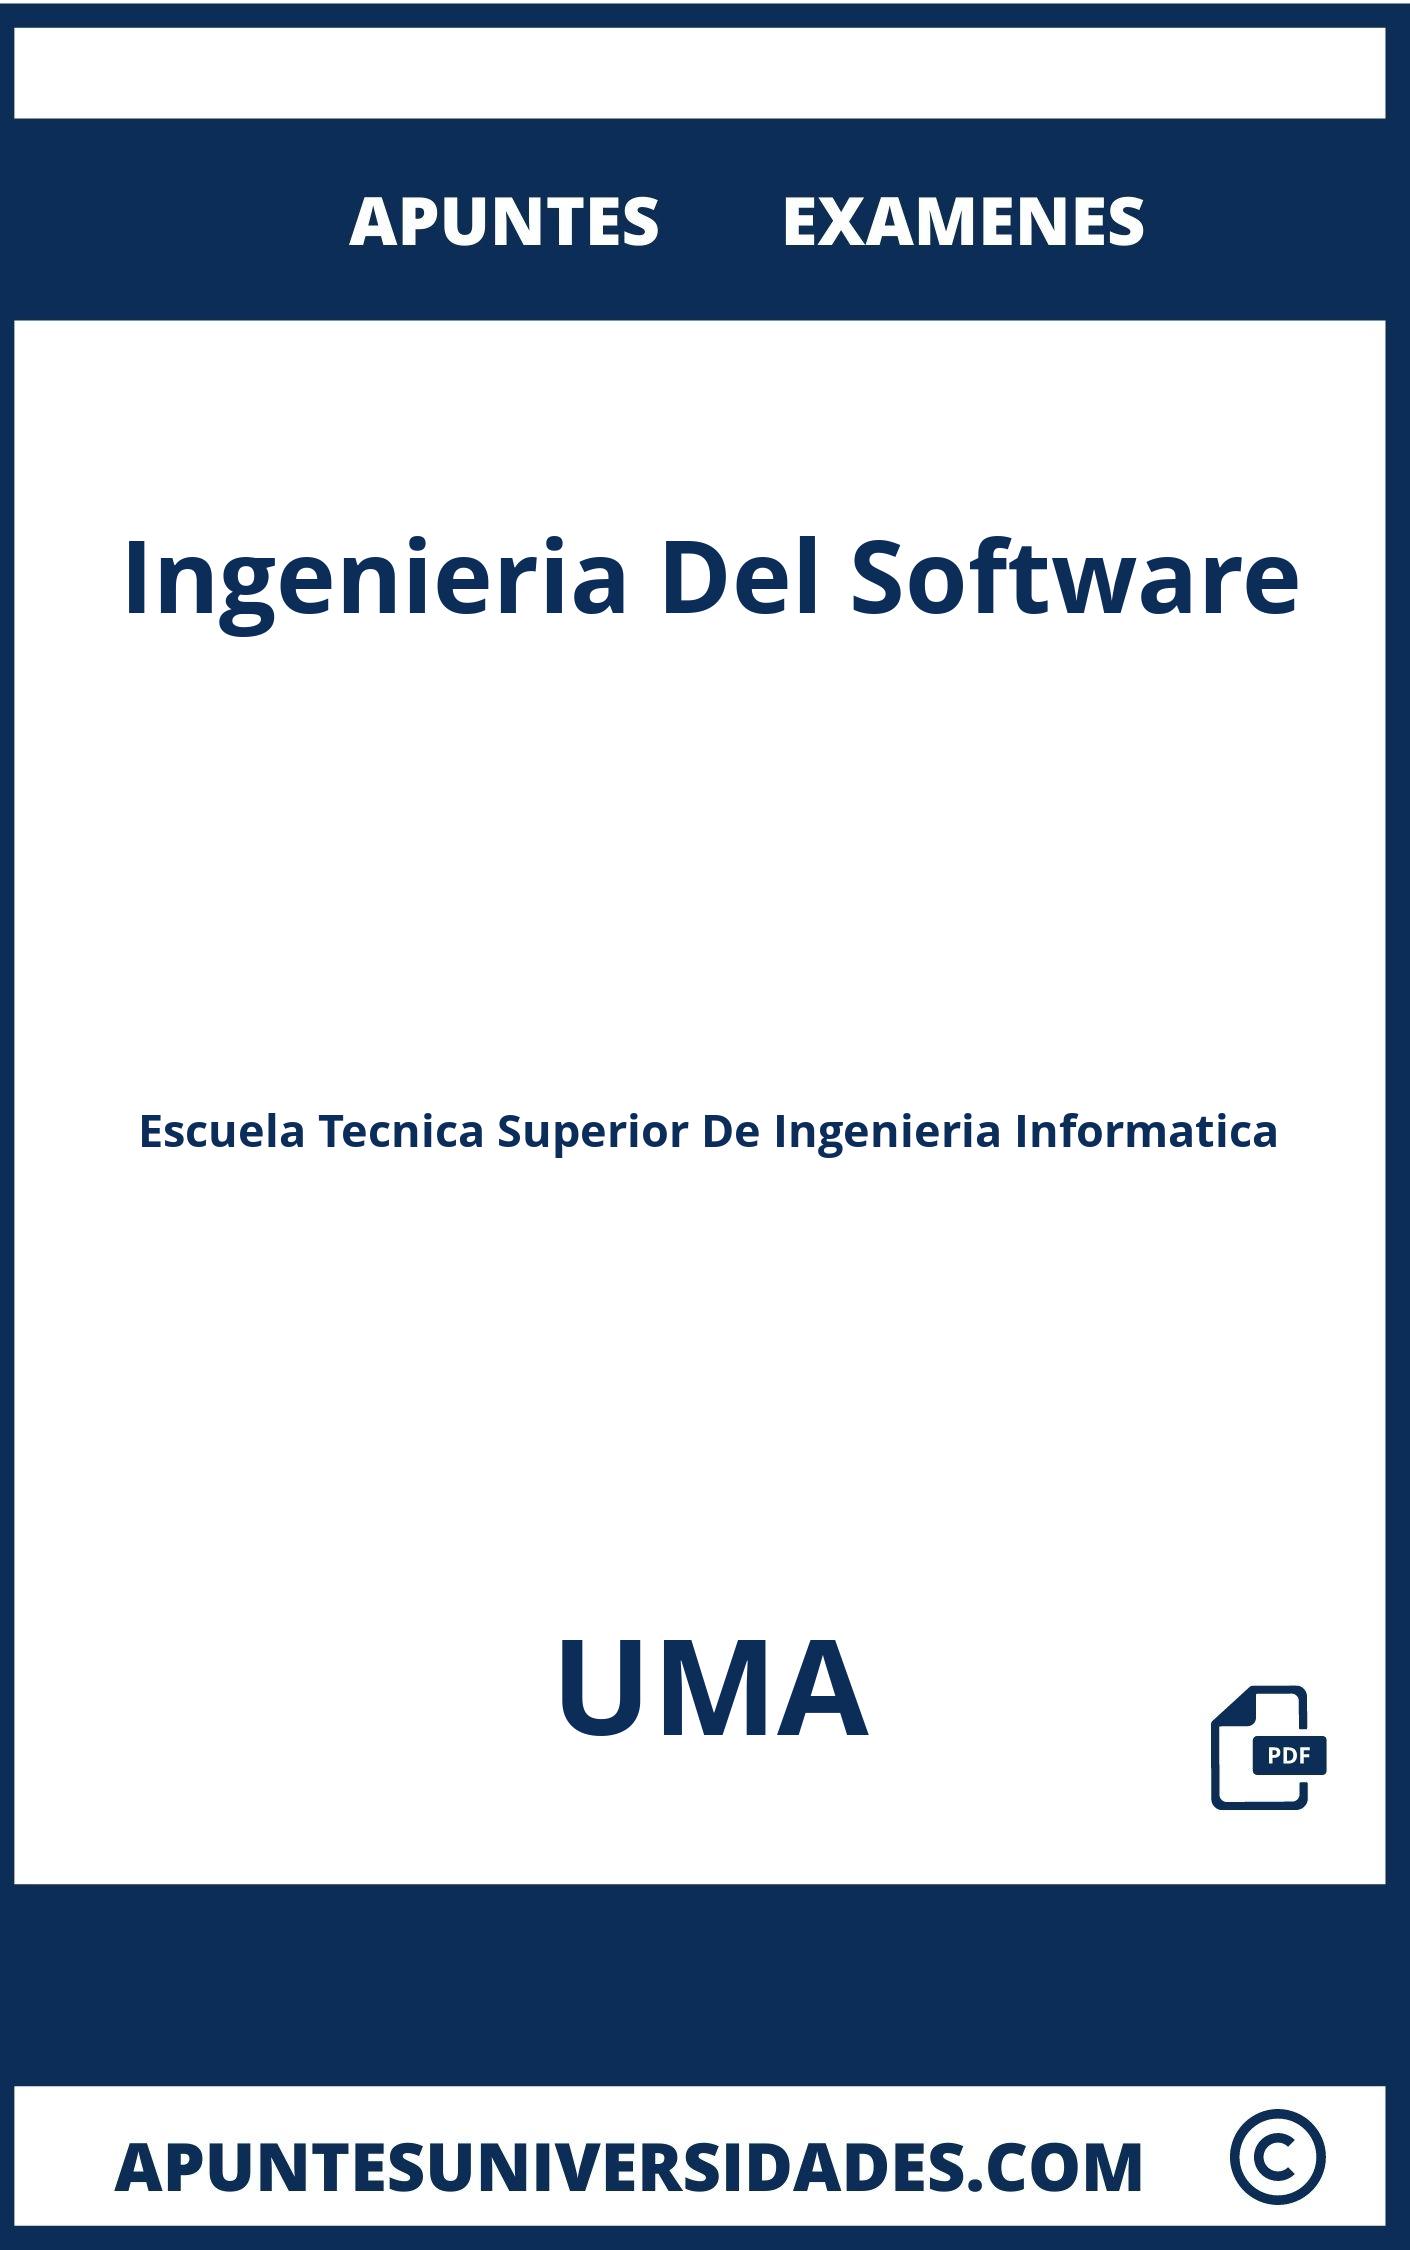 Apuntes y Examenes de Ingenieria Del Software UMA